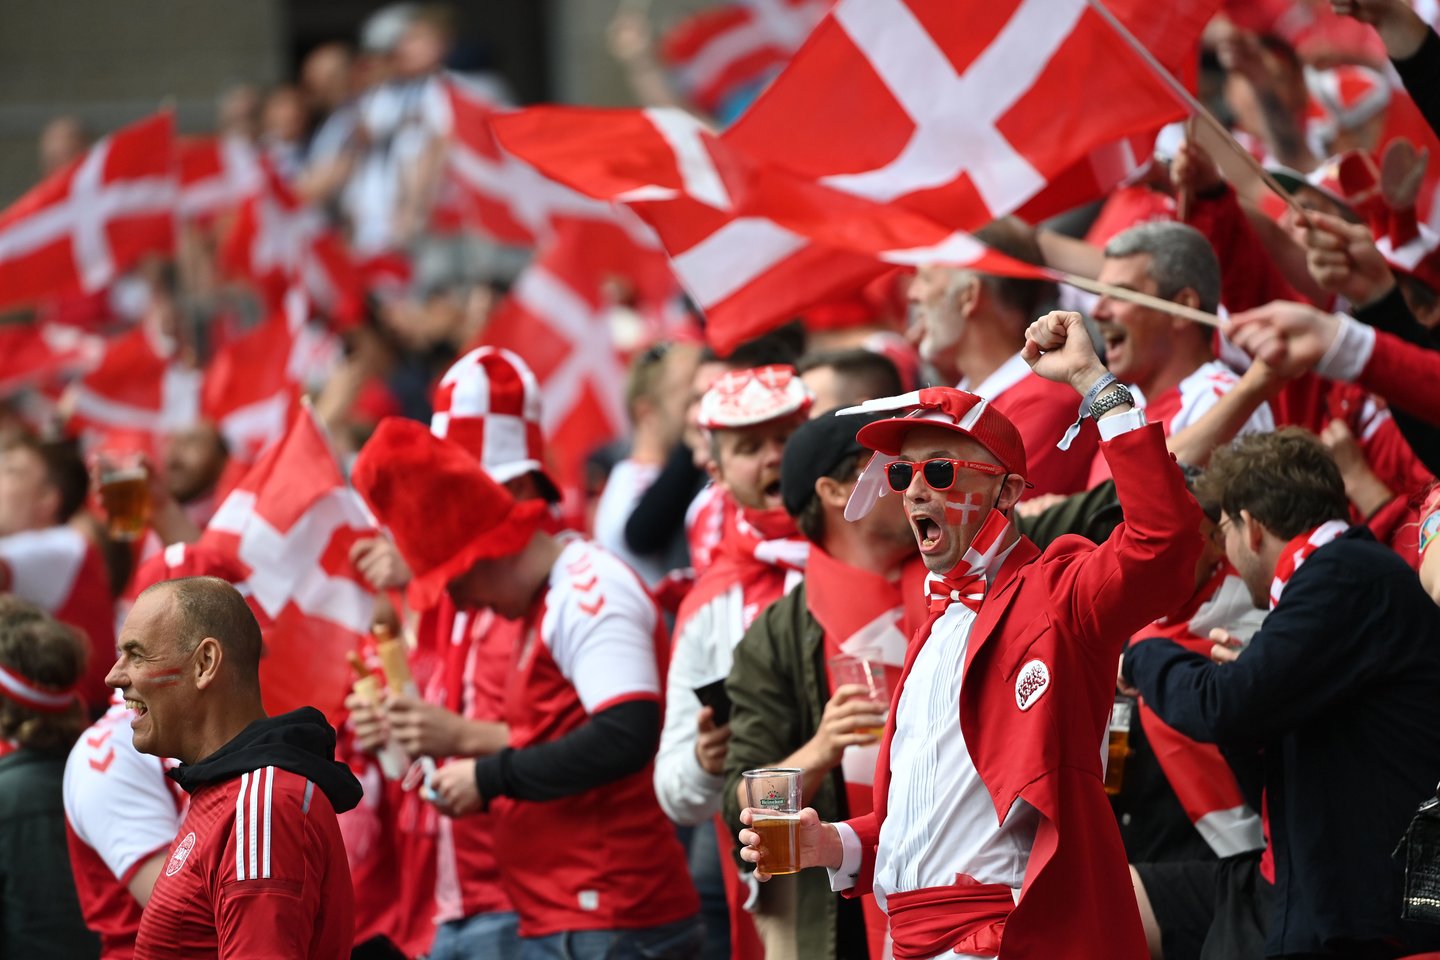 Danijos ir Suomijos rungtynės buvo nutrauktos. <br>Reuters/Scanpix nuotr.